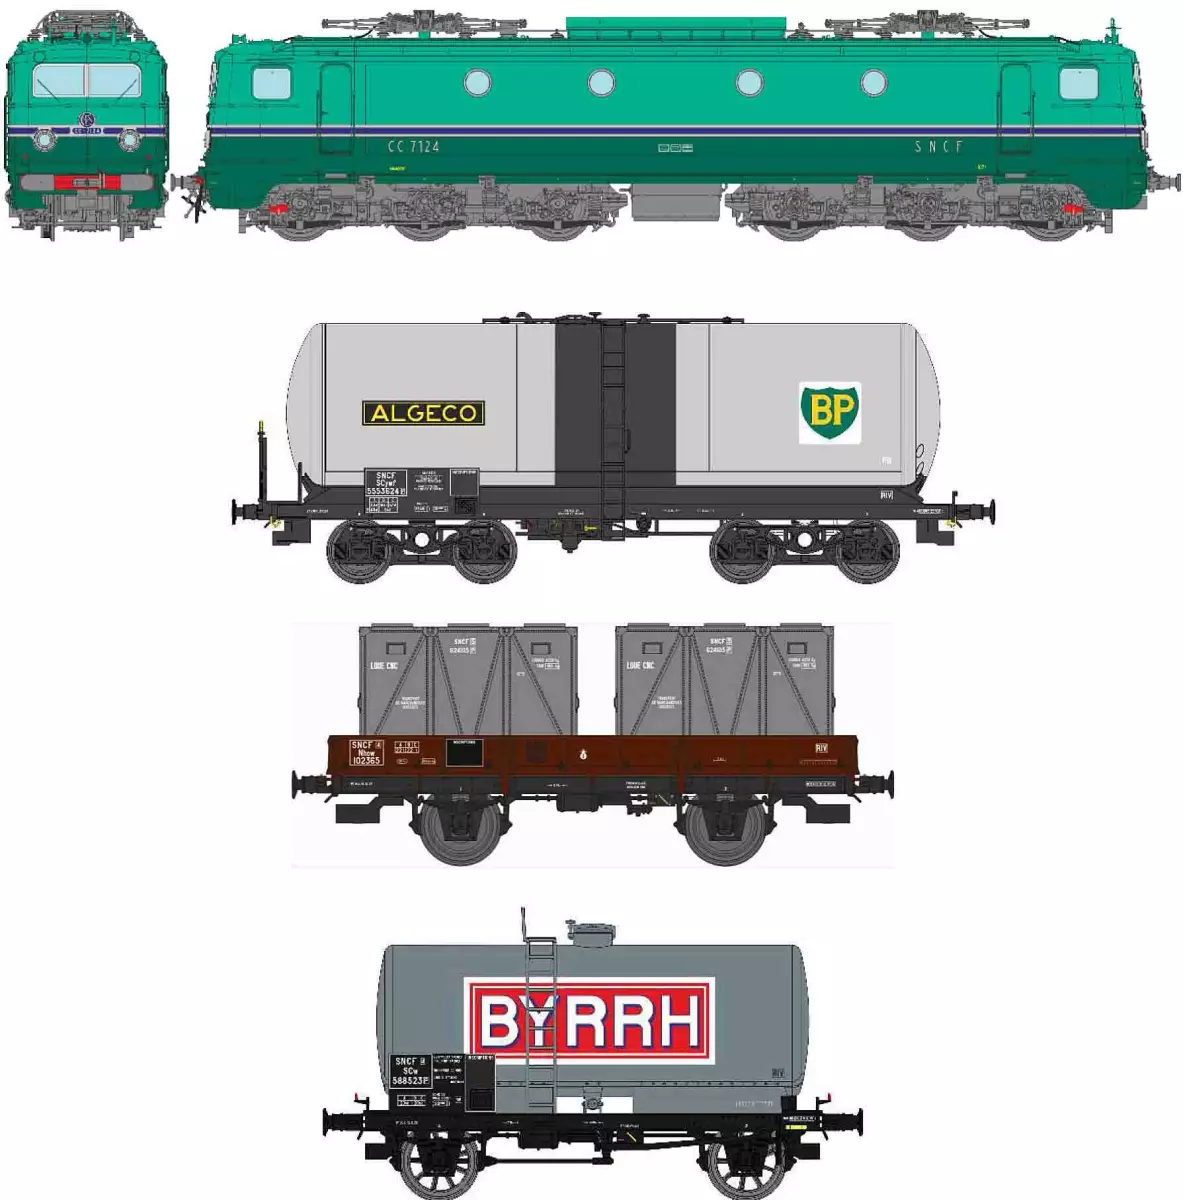 "OFFRE SPECIALE FETE DES PERES" Coffret locomotive électrique CC 7124 du dépôt de Chambéry avec 3 wagons de marchandises